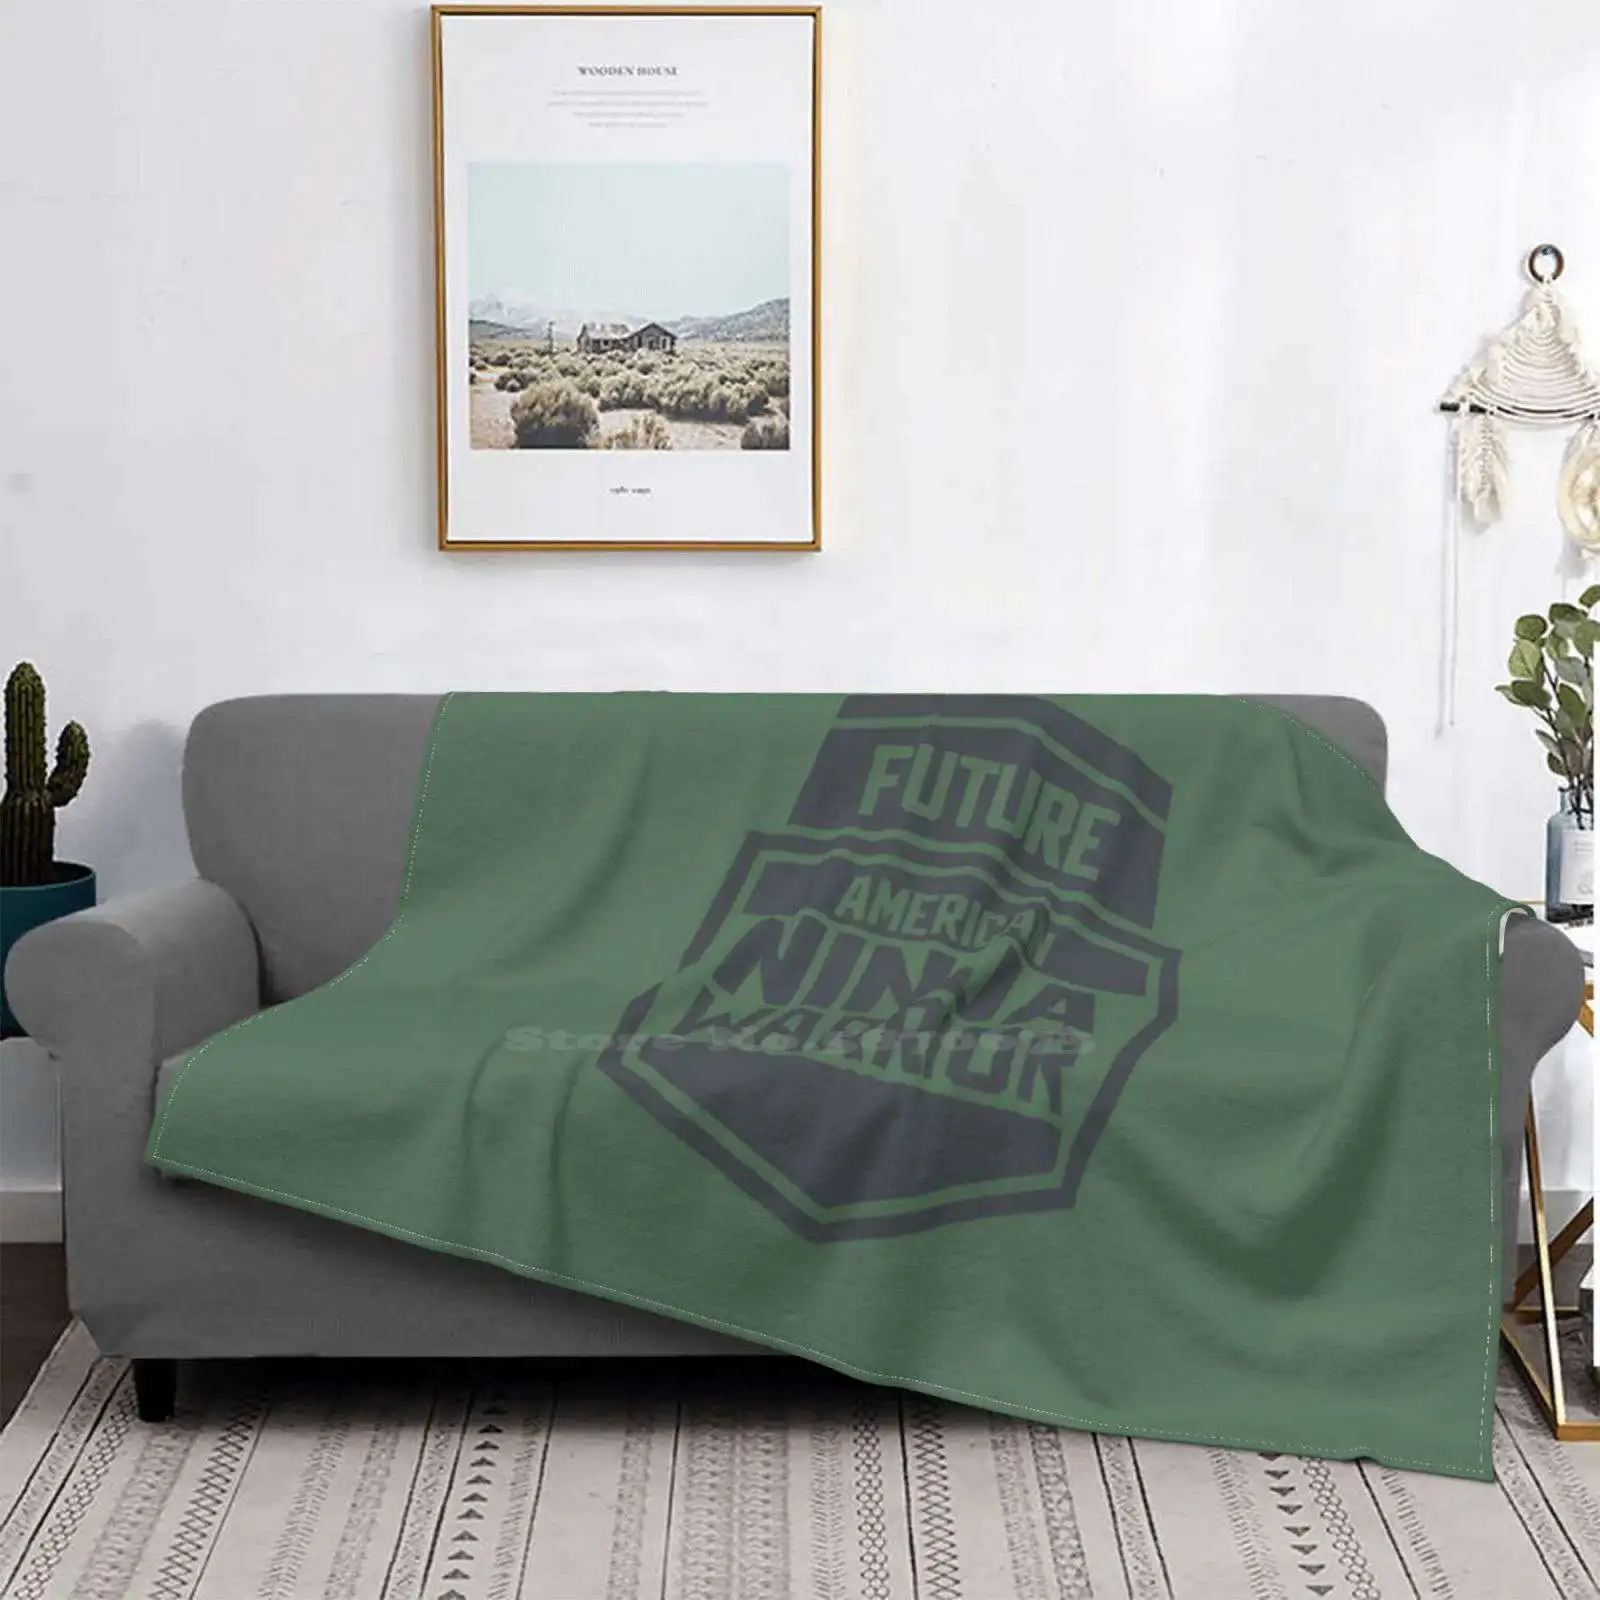 

Будущие американские супер теплые мягкие одеяла диванные на диван/кровать/путешествия американское крепление Midoriyama препятствия для спорт...